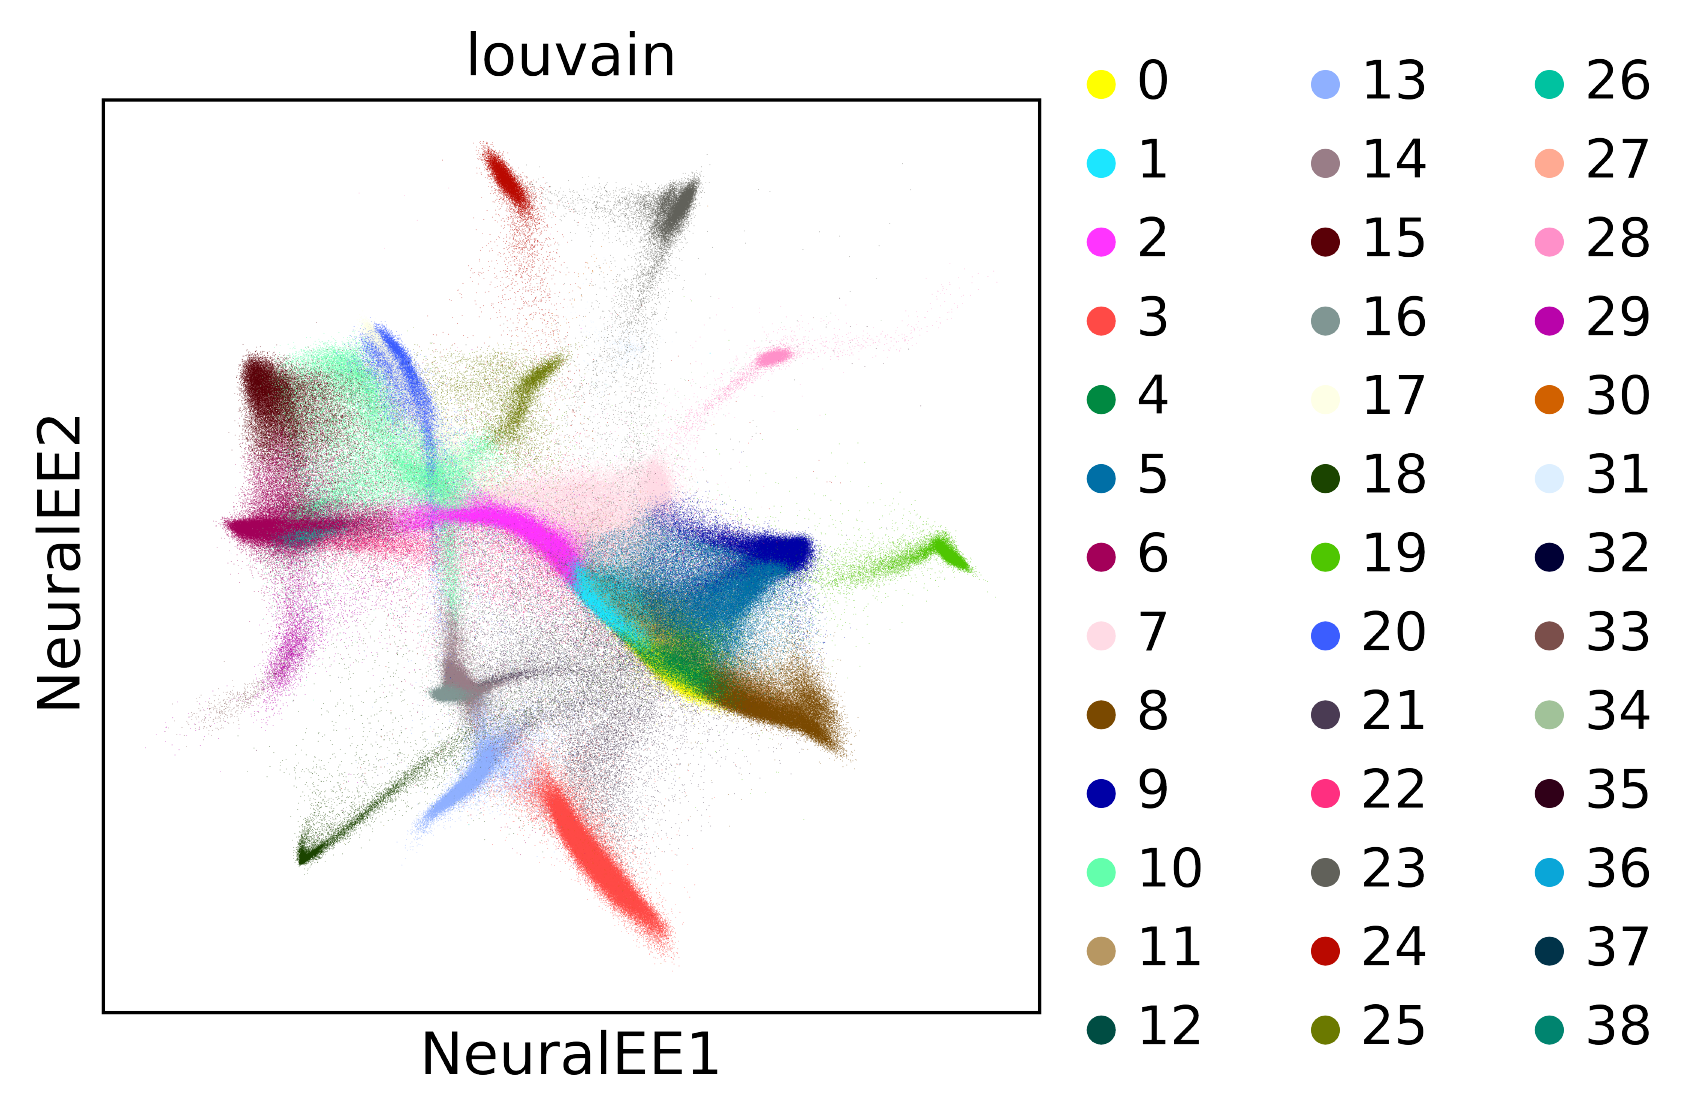 NeuralEE of BRAIN LARGE